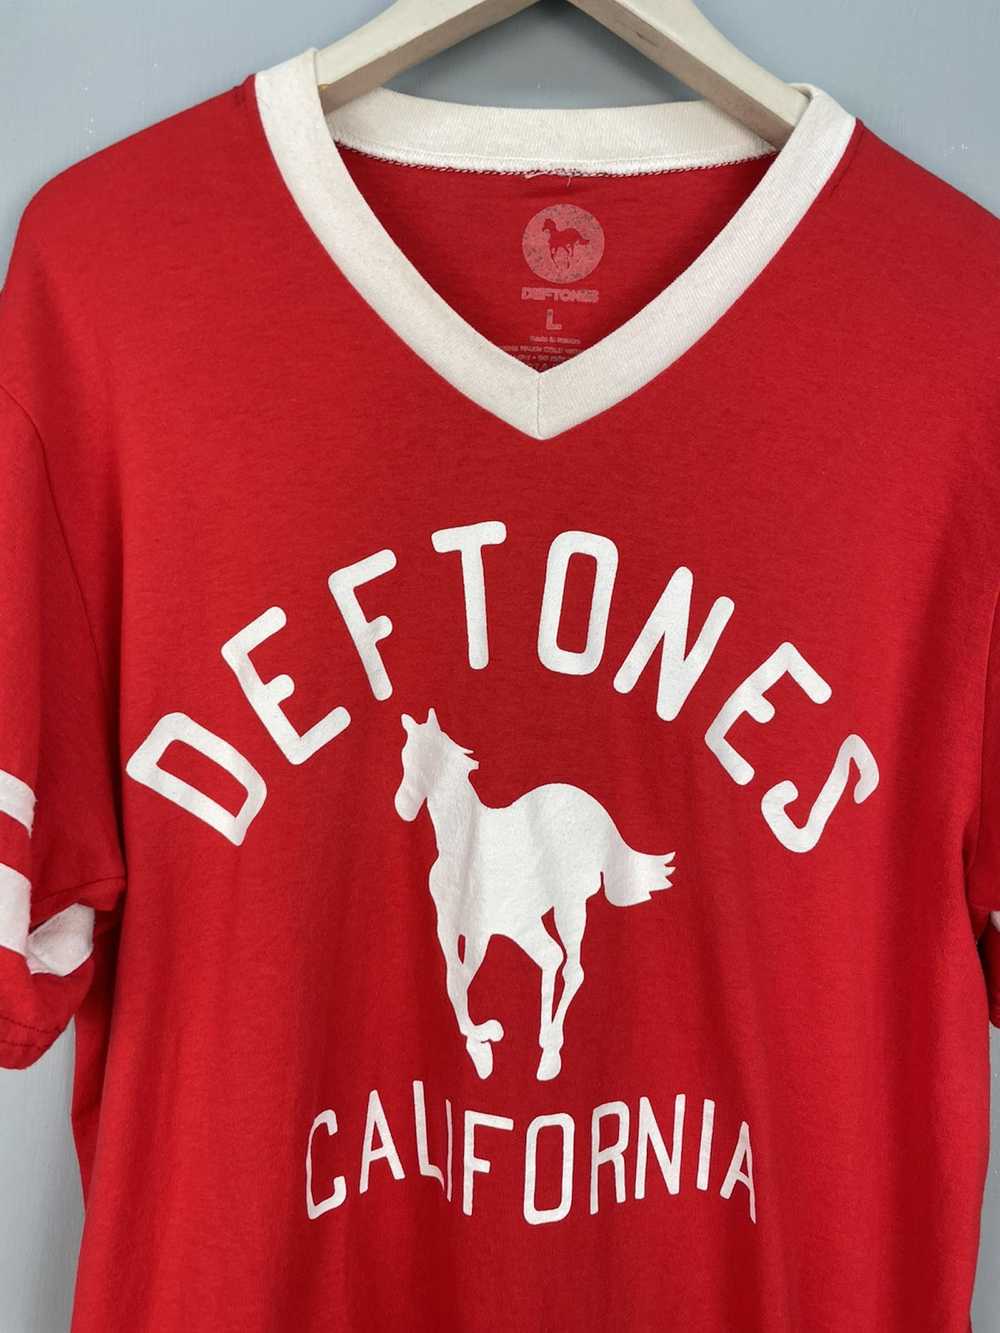 Band Tees Deftones rock band t shirt - image 3